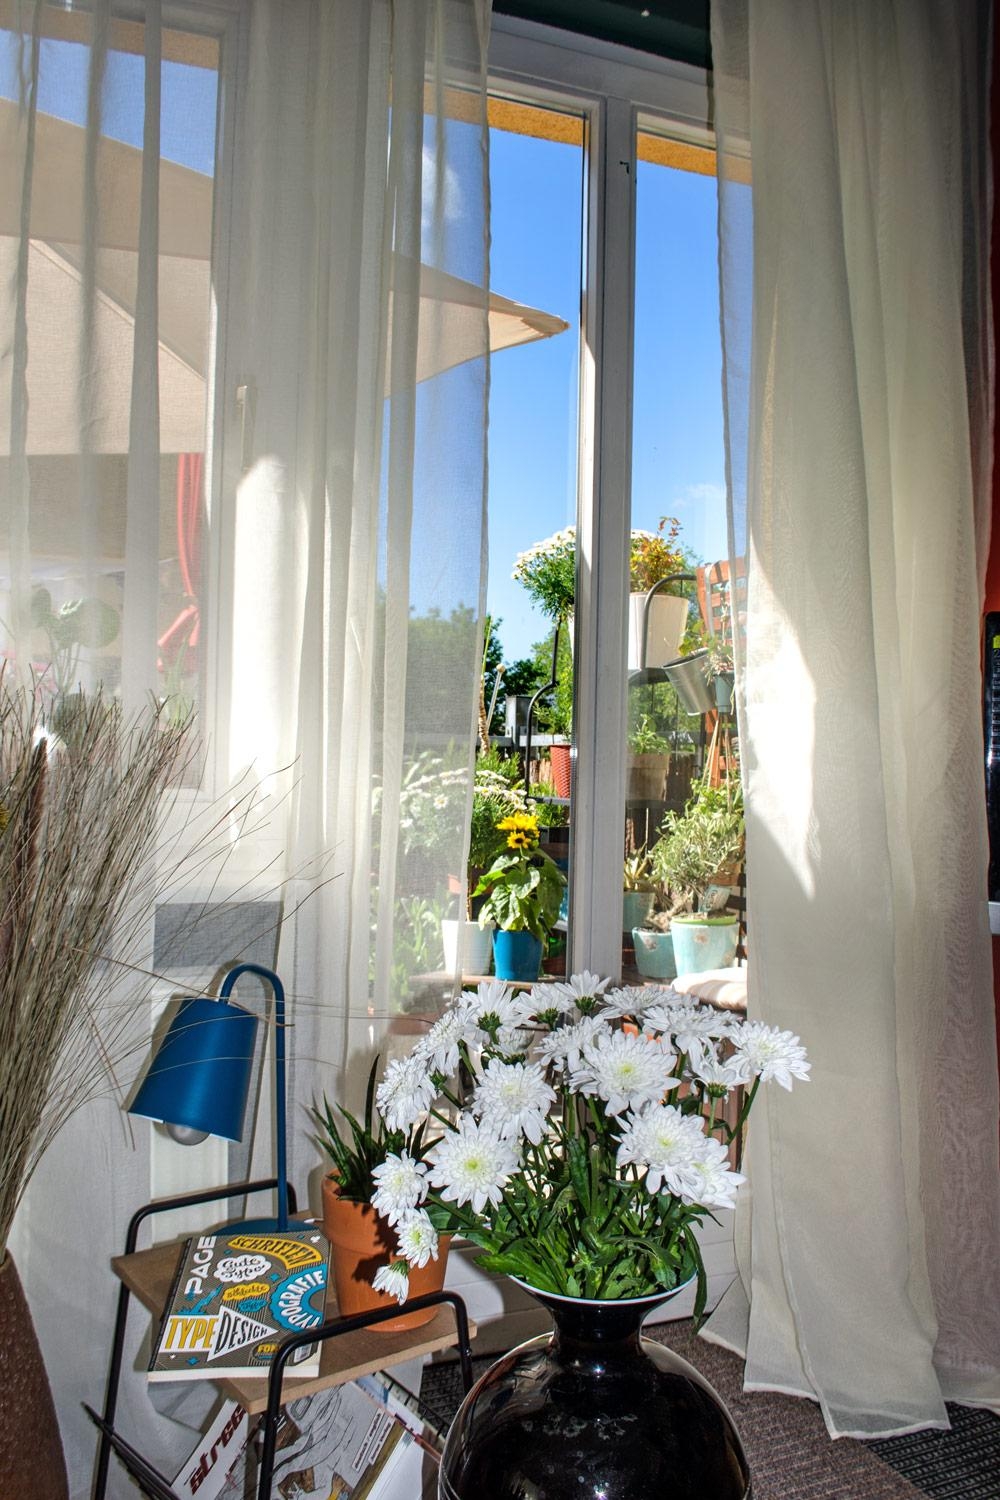 Blick aus dem Wohnzimmer auf den Balkon #balkon #wohnzimmer #livingroom #balcony #blumen #flowers #eclectic #boho